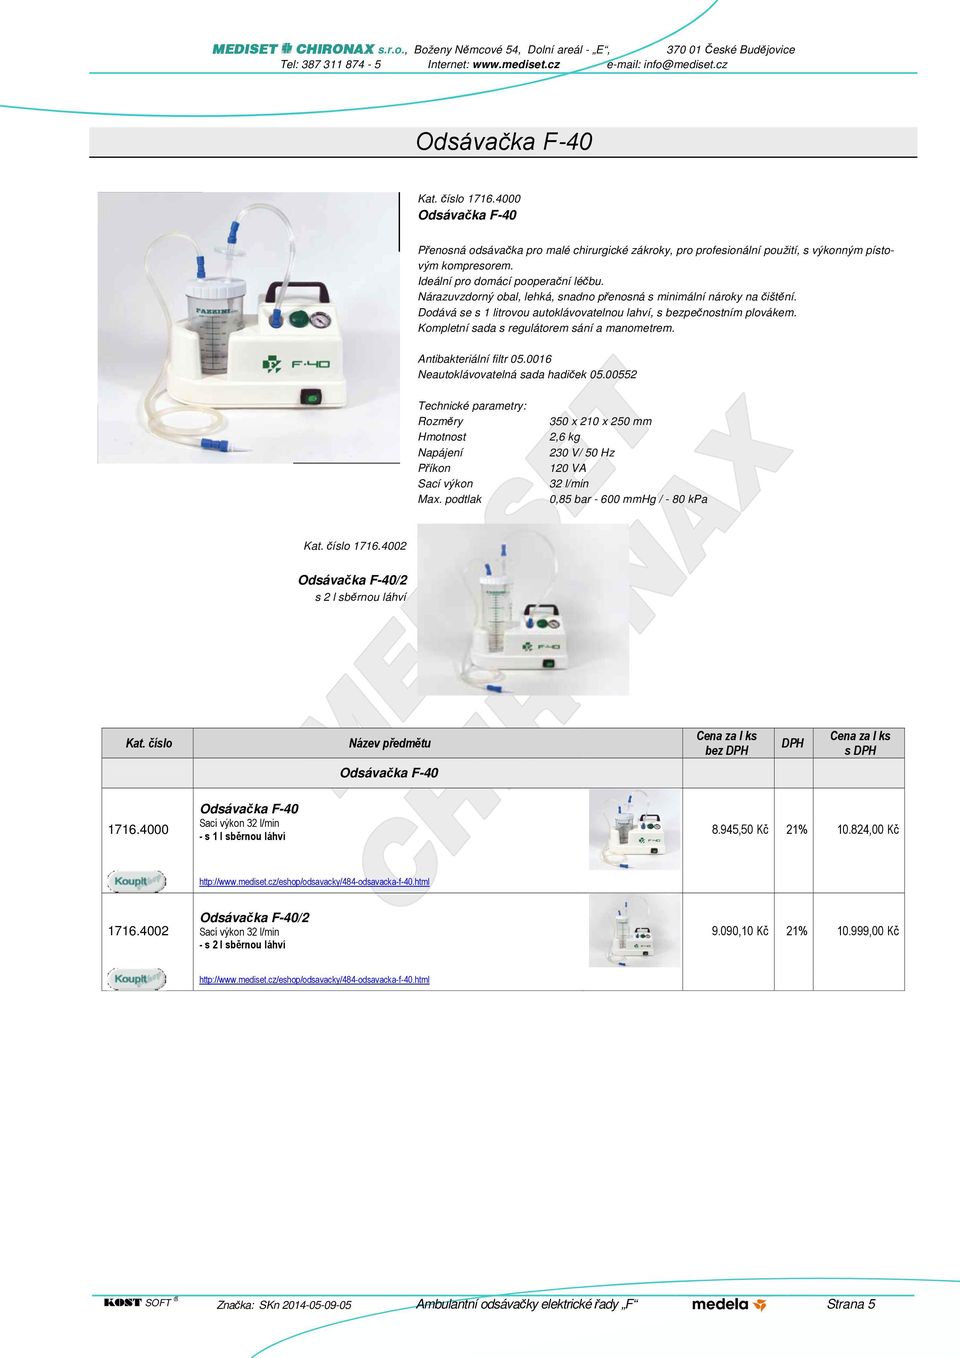 Antibakteriální filtr 05.0016 Neautoklávovatelná sada hadiček 05.00552 Technické parametry: Rozměry Hmotnost Napájení Příkon Sací výkon Max.